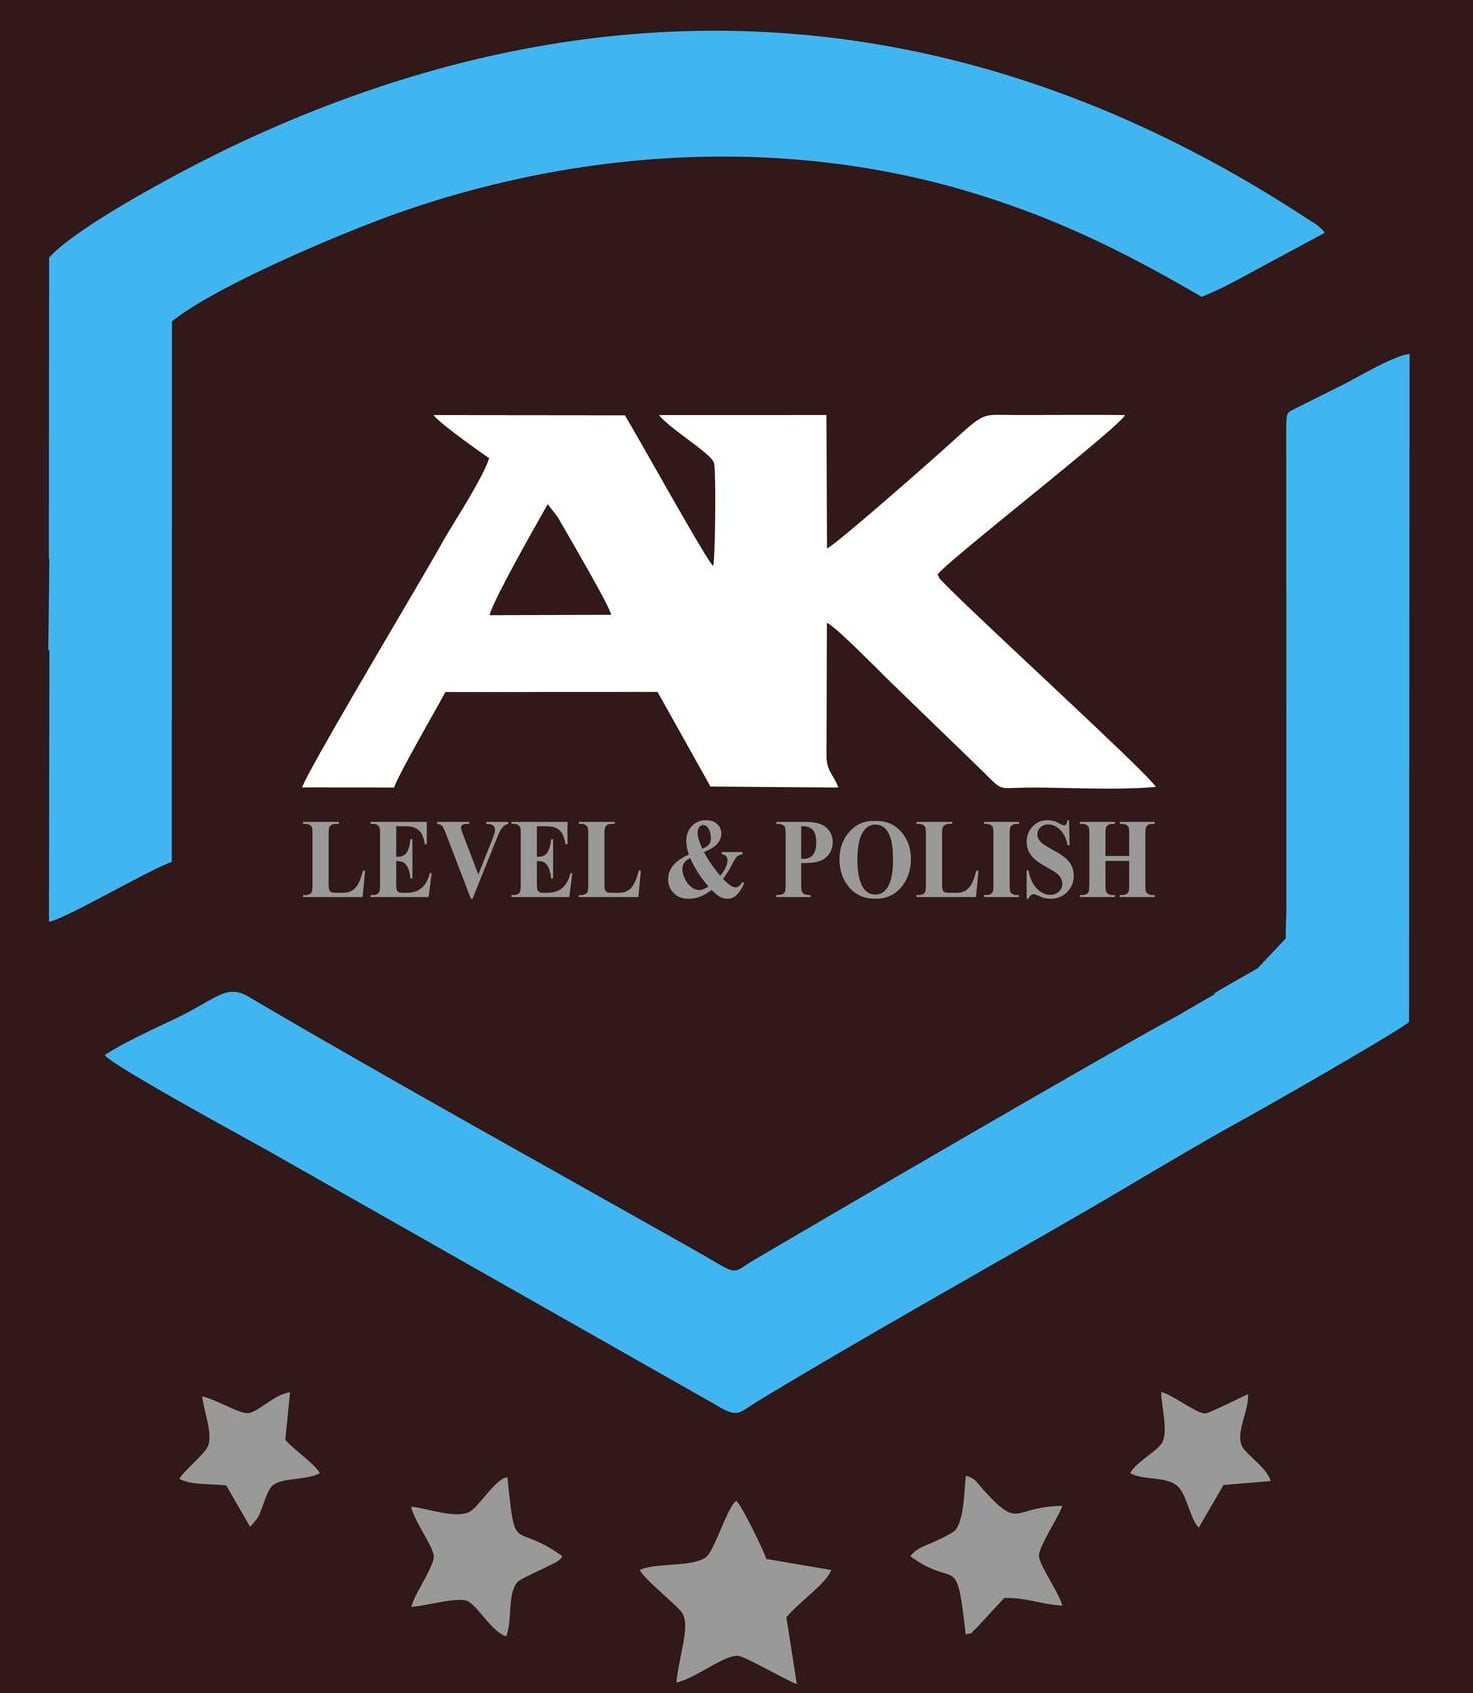 AK Level Polish Epoxy Toronto | logo for flooring tiles